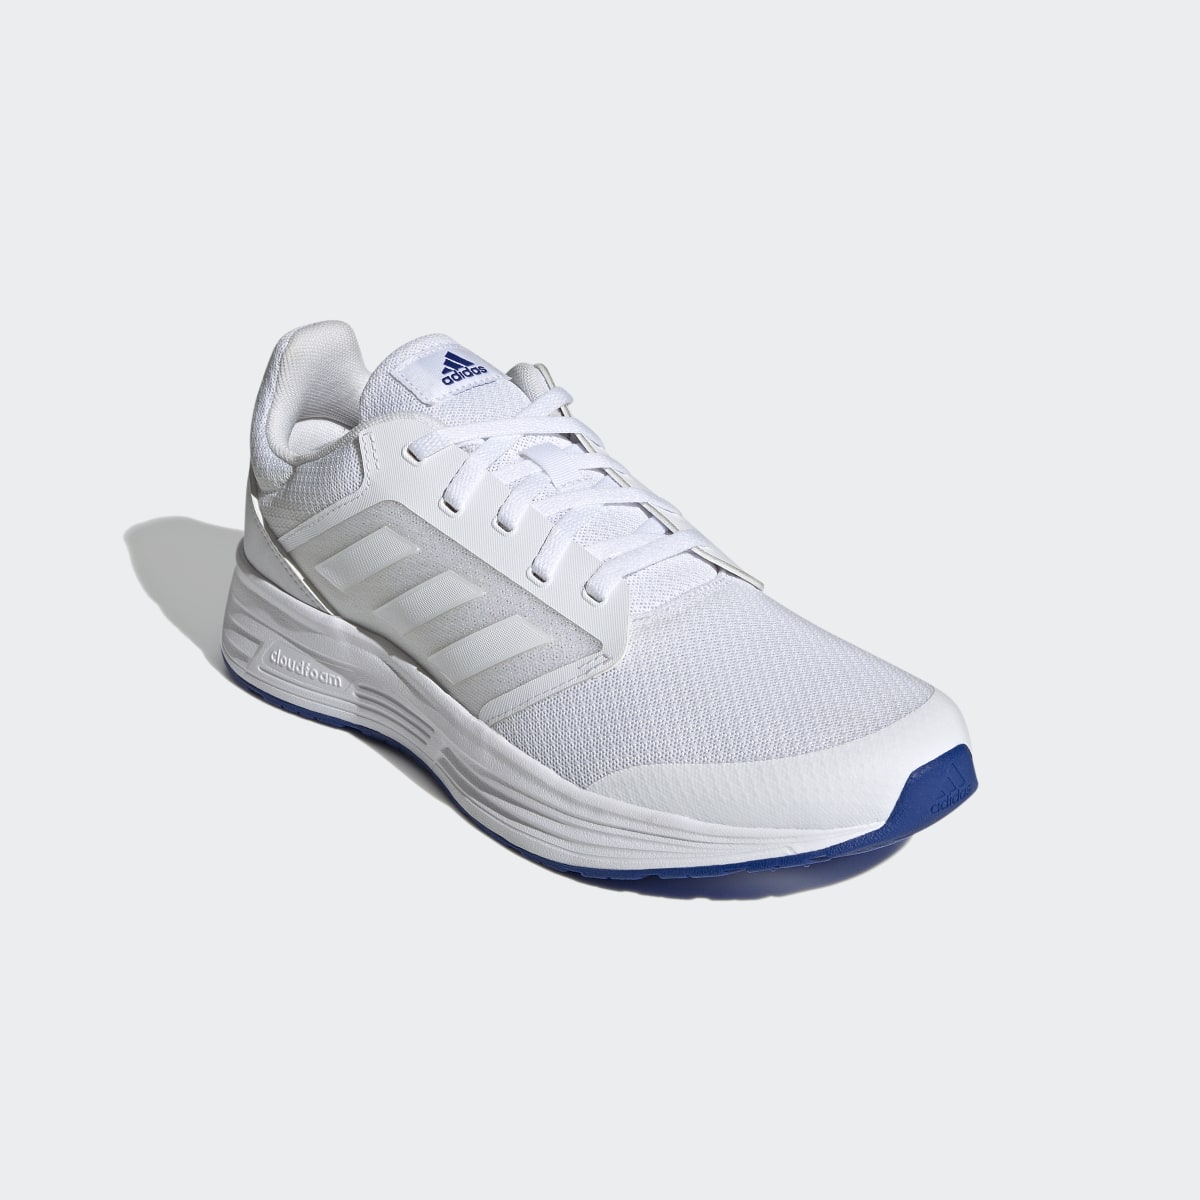 Adidas Galaxy 5 Ayakkabı. 5